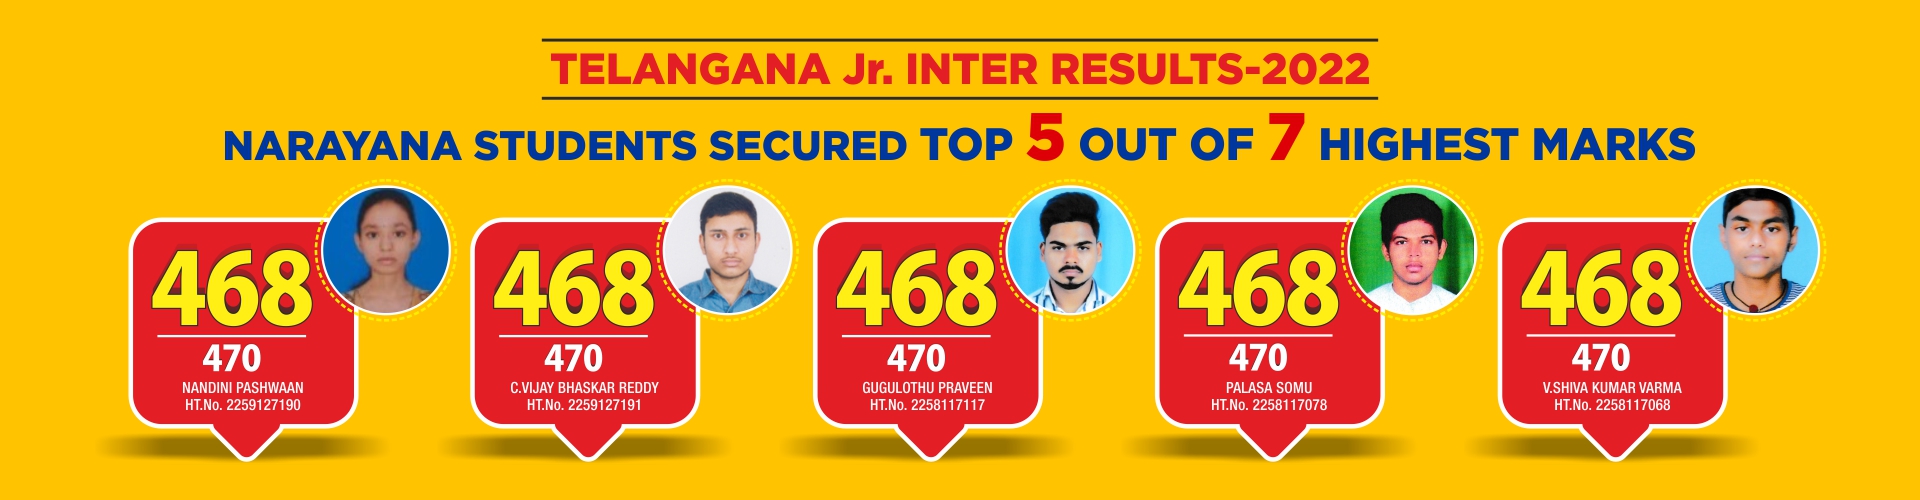 Inter Results Telangana